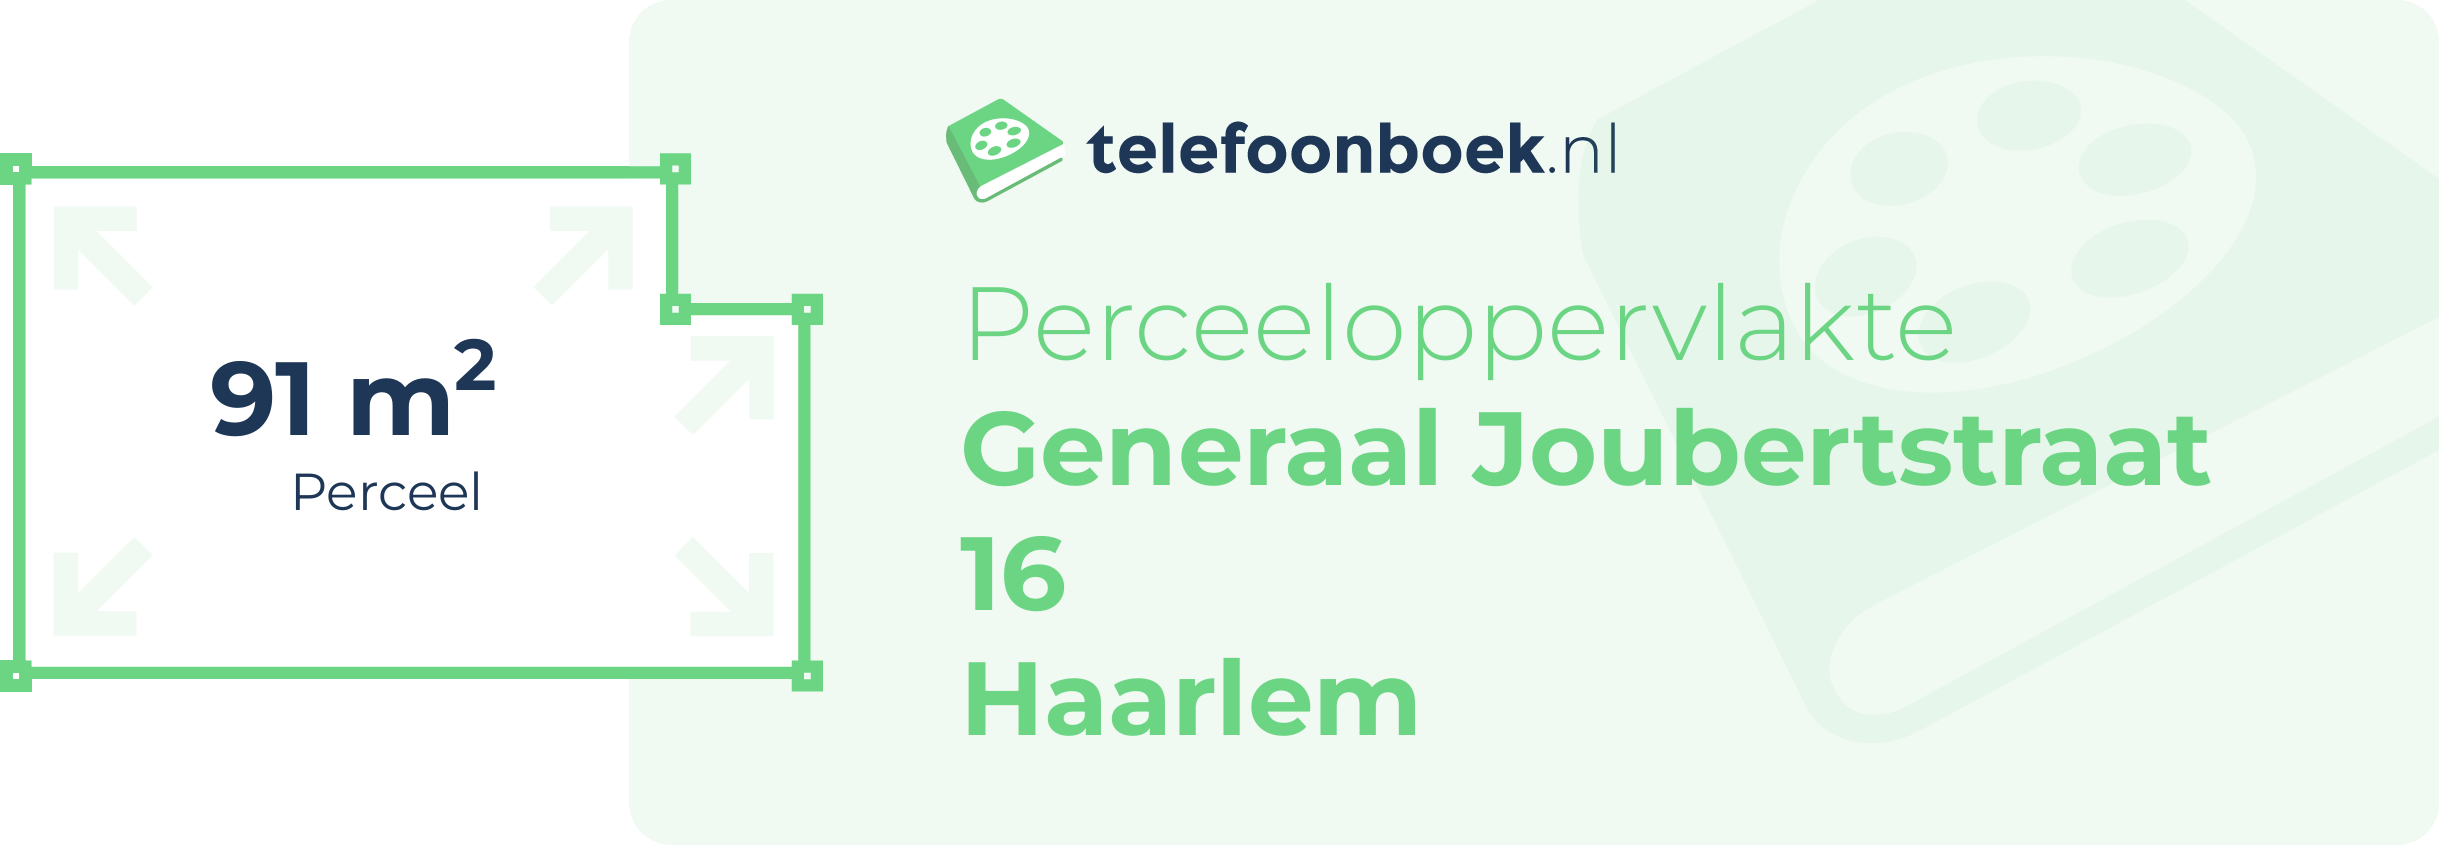 Perceeloppervlakte Generaal Joubertstraat 16 Haarlem